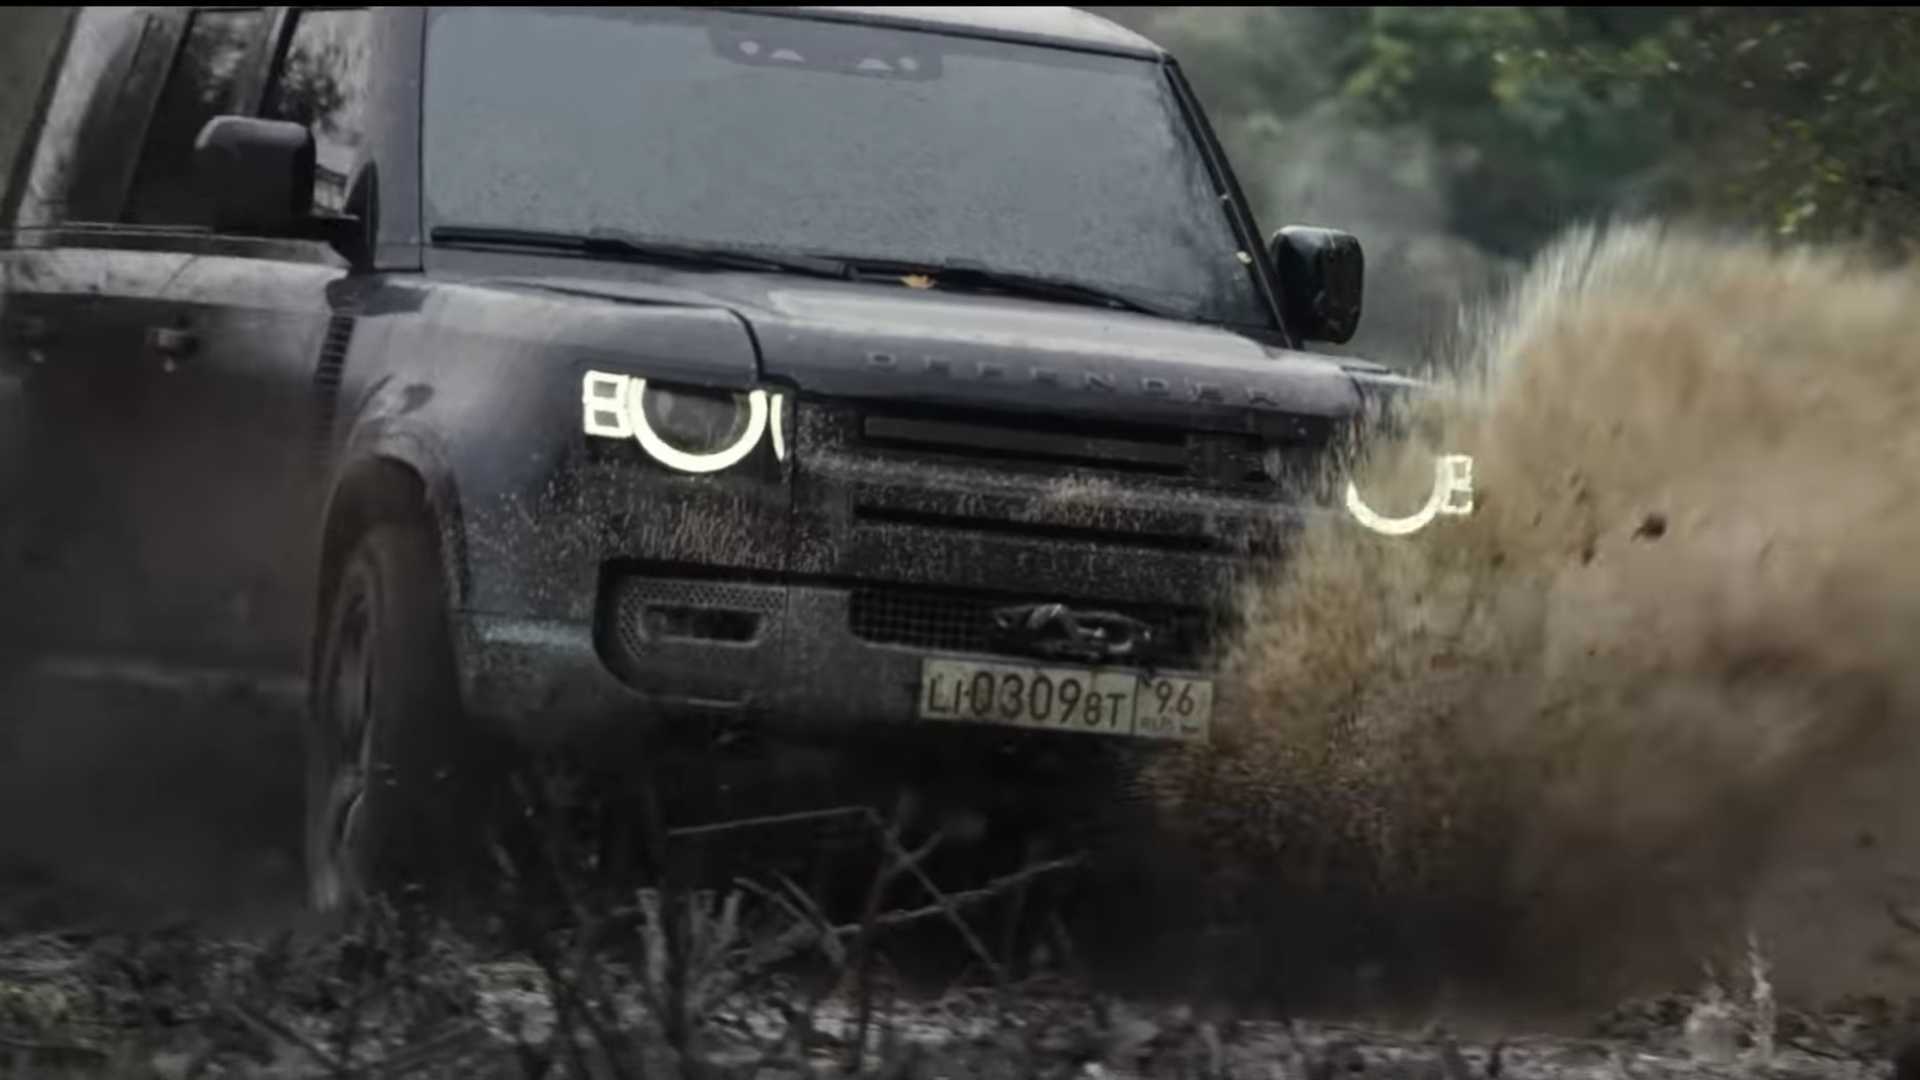 Land Rover Defender 2020 bay lượn như chim trong trailer mới của phim 007, vẫn bị người dùng quay lưng - Ảnh 3.